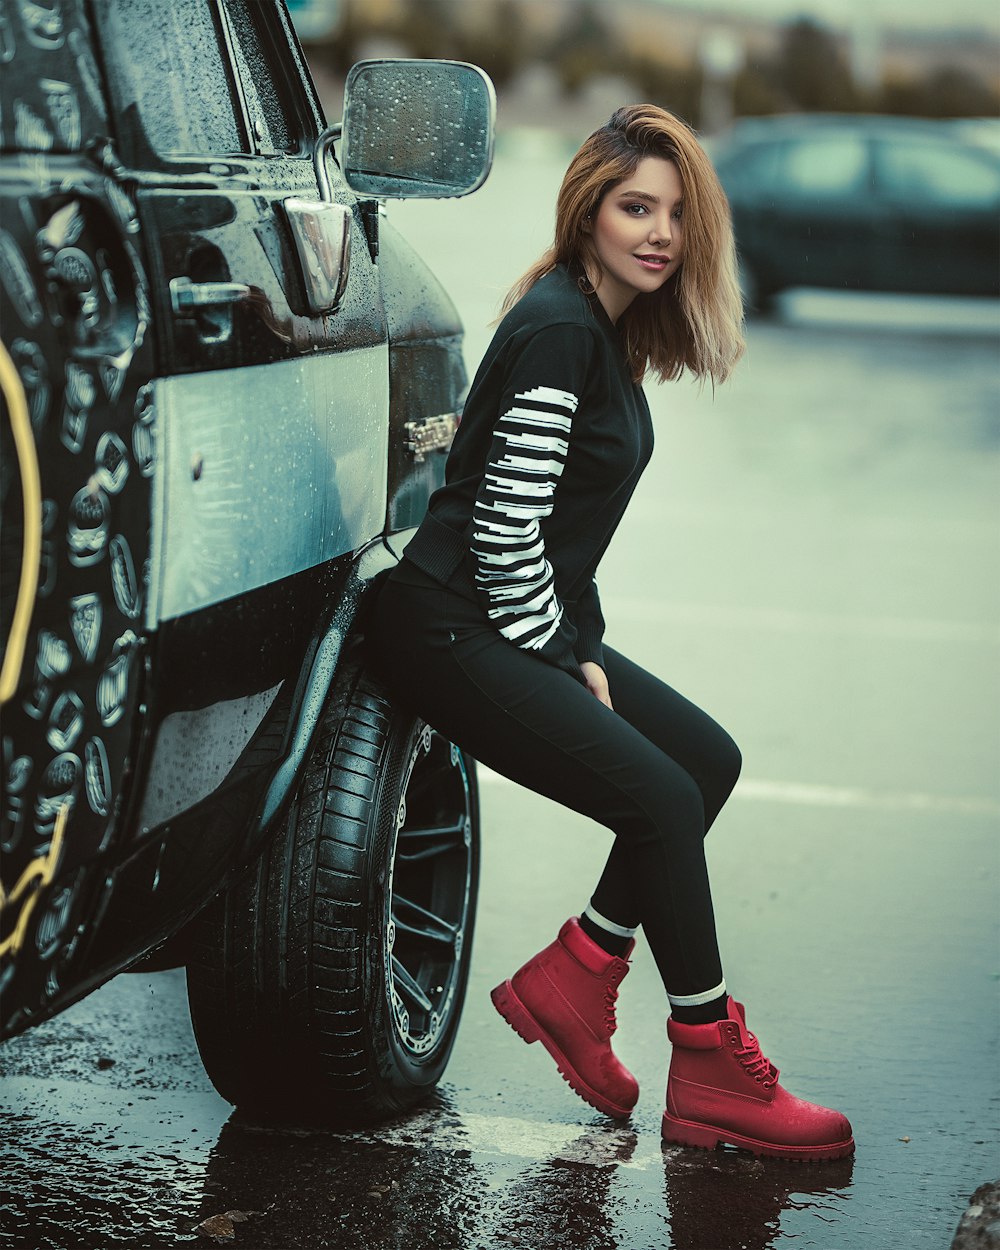 smiling woman wearing black leggings sitting on vehicle wheel